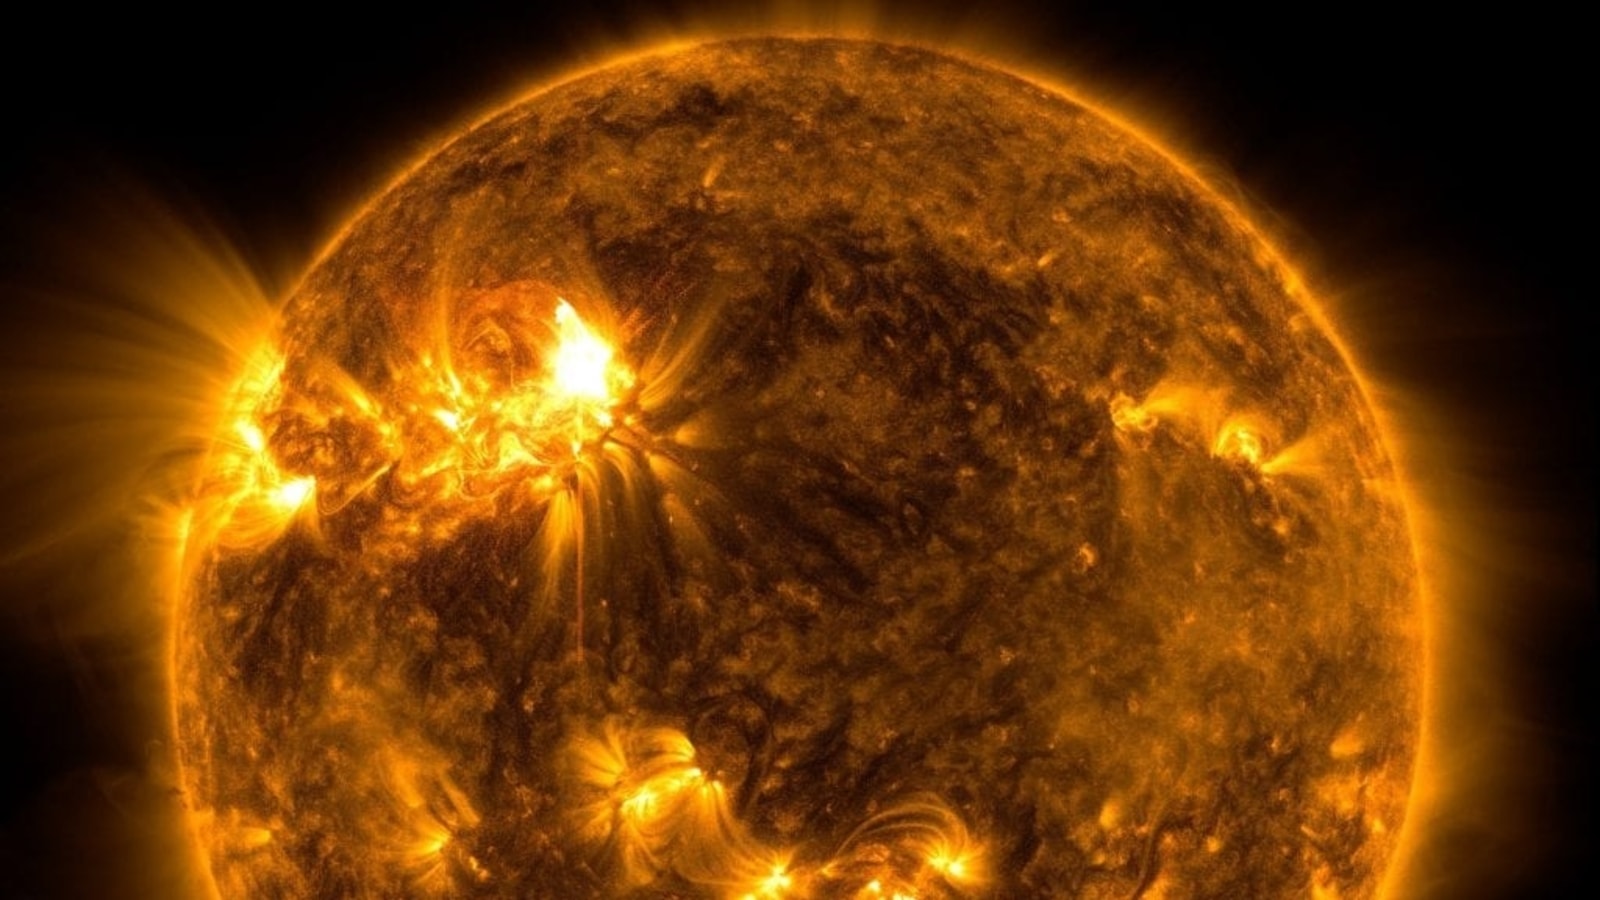 plamy słoneczne wyzwalają rozbłyski słoneczne klasy M;  W ziemskim polu magnetycznym odkryto duże pęknięcie